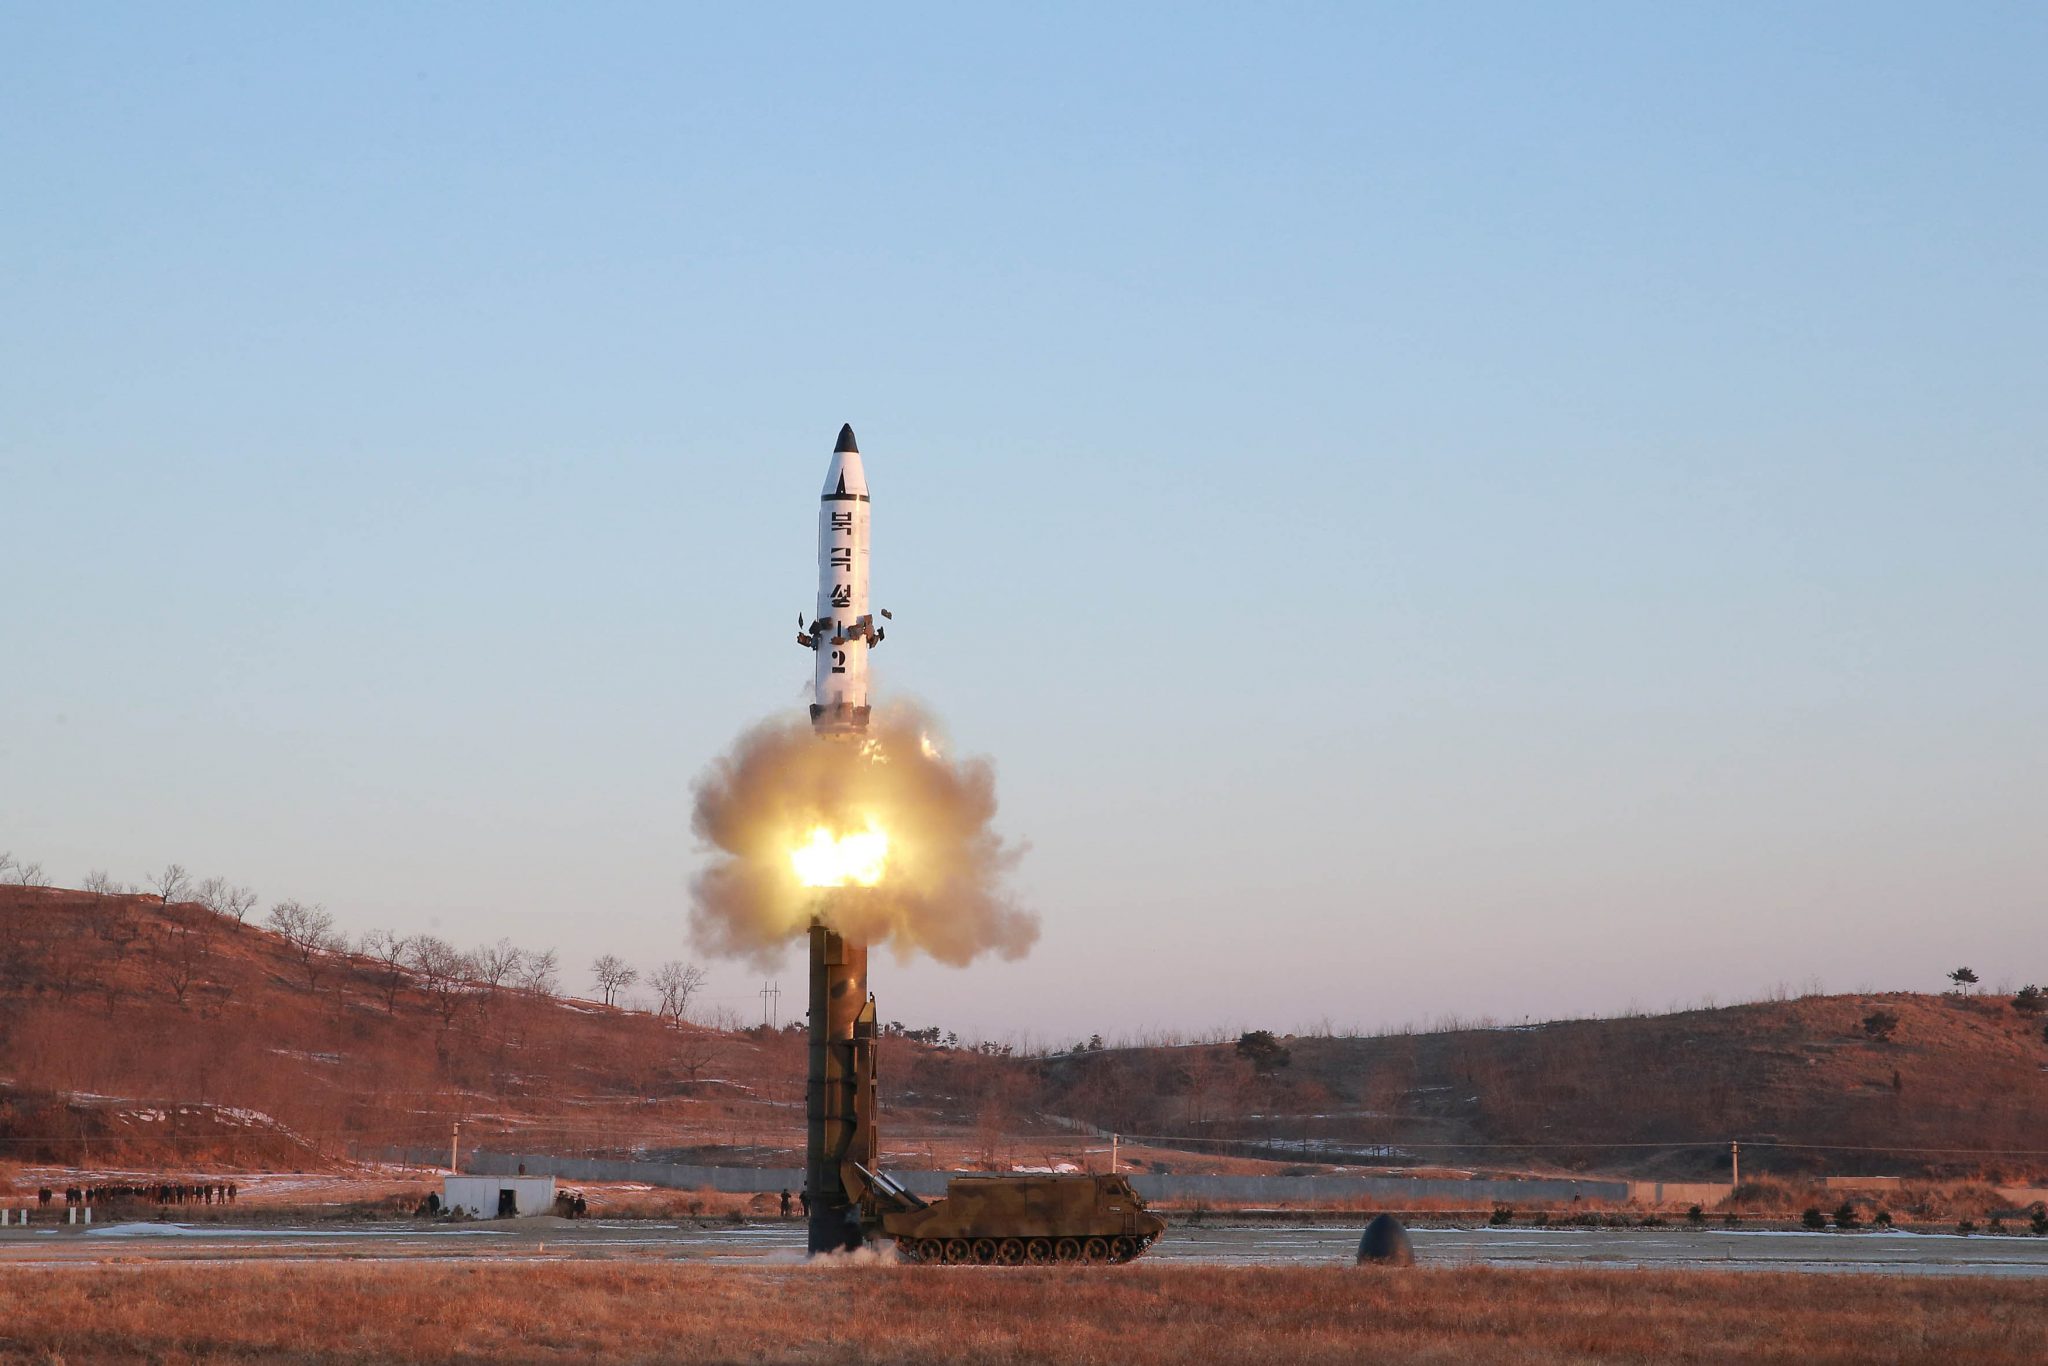   كوريا الجنوبية: تأثير إطلاق بيونج يانج لصاروخ على السوق محدود